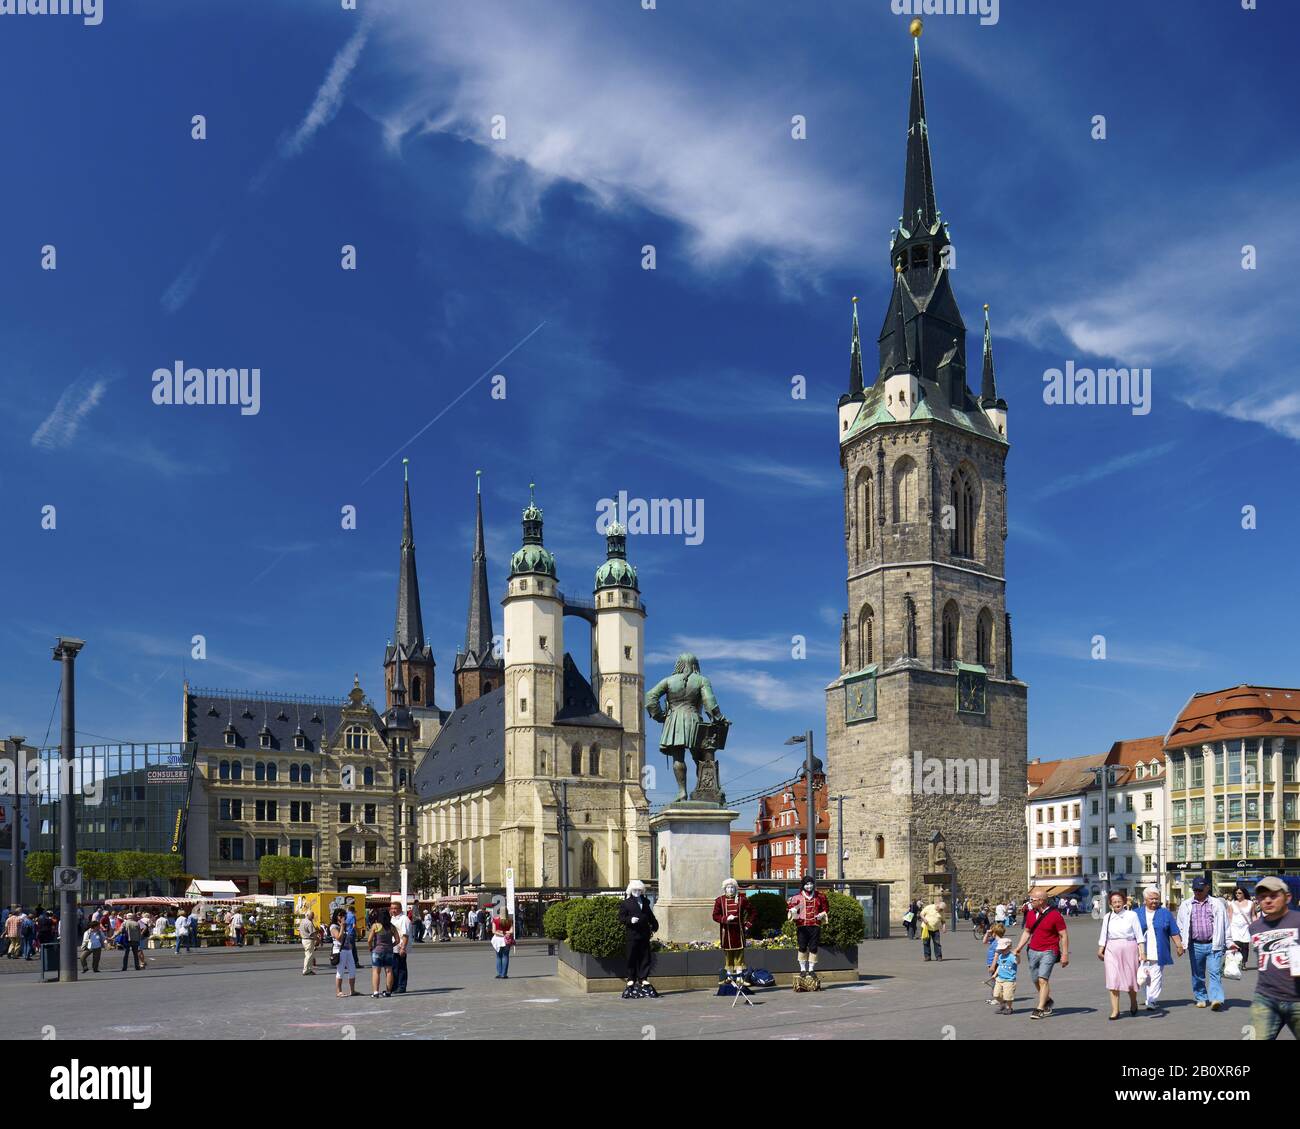 Plaza del mercado con la iglesia del mercado de San Marien, el monumento conmemorativo de la mano y la torre roja, Halle / Saale, Sajonia-Anhalt, Alemania, Foto de stock